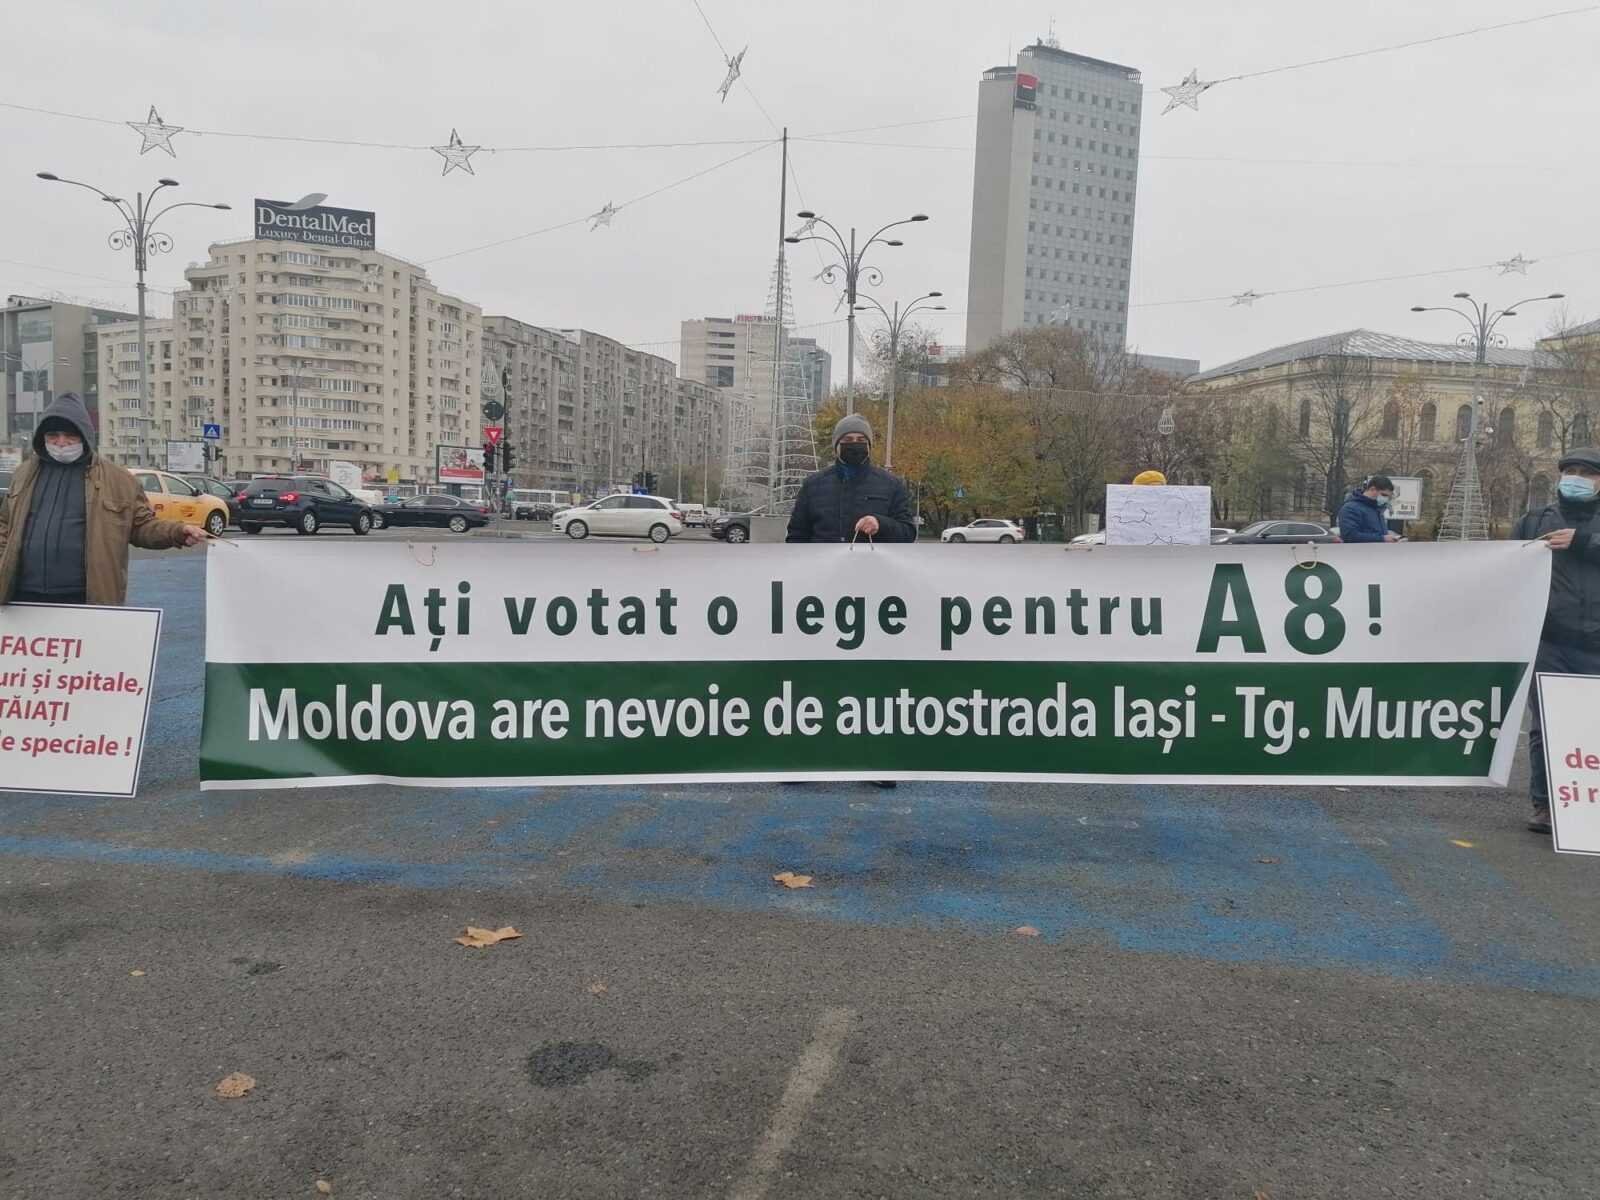  Se blochează drumuri în Moldova? Proteste dacă autostrada Unirii va fi tratată cu dezinteres